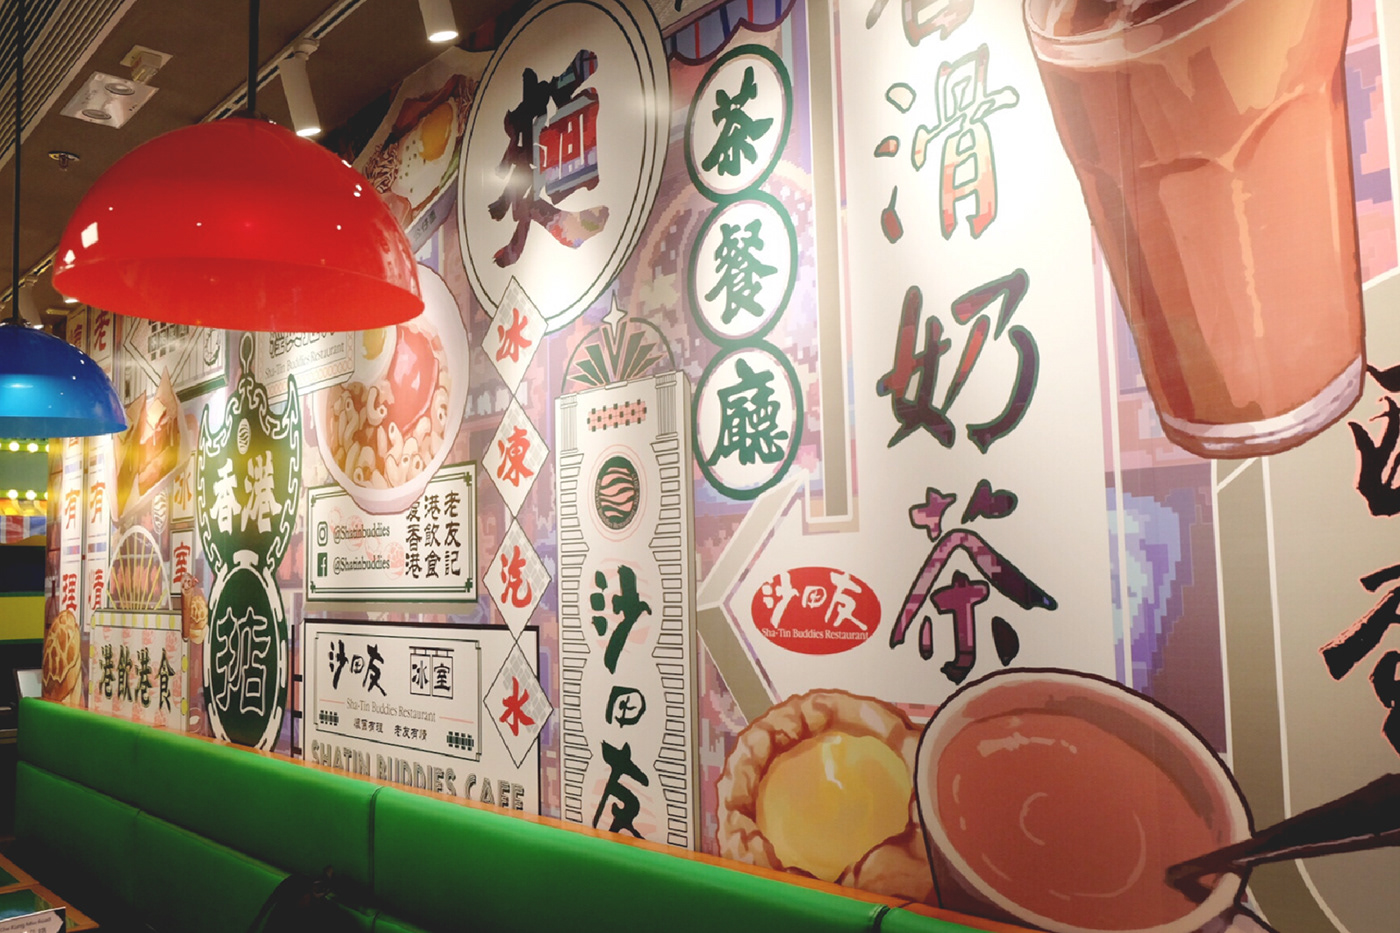 茶餐廳 冰室 香港 復古 restaurant 懷舊 霓虹燈 招牌 港式茶餐廳 香港風格